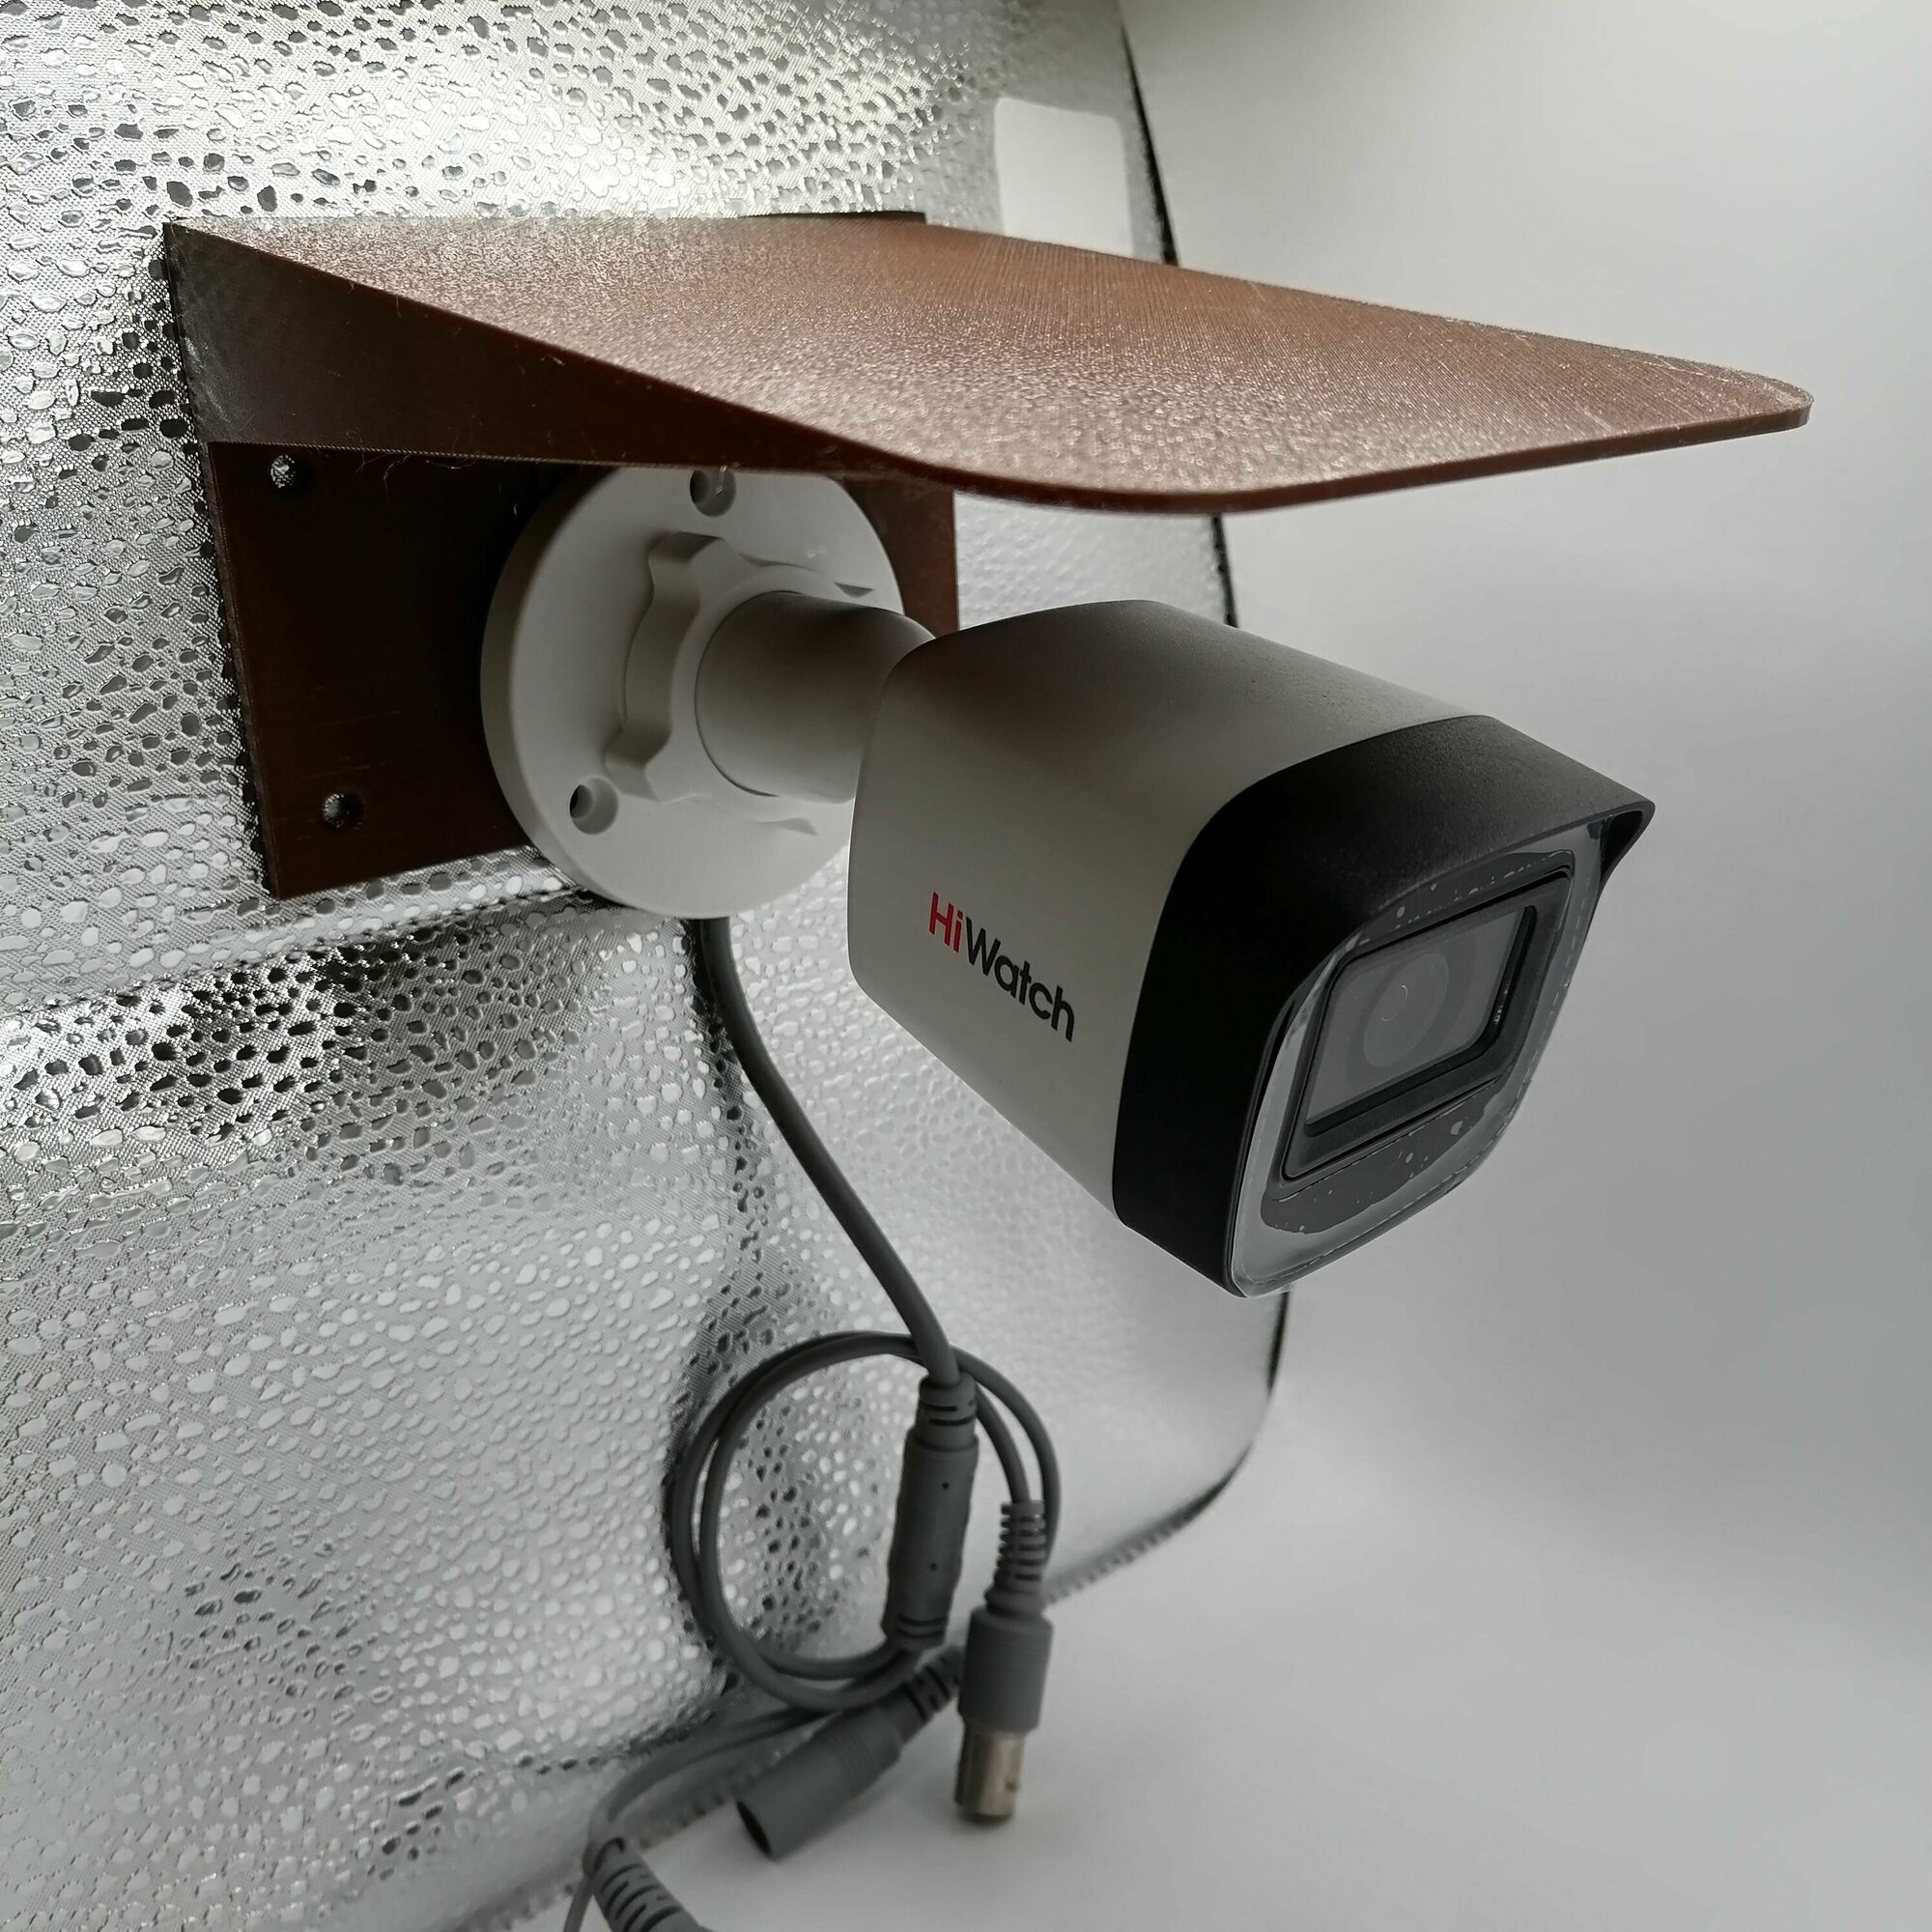 Защитный козырек для камеры (светильника) видеонаблюдения HIKVISION HIWATCH DAHUA плоский (коричневый) защита камеры от дождя льда снега